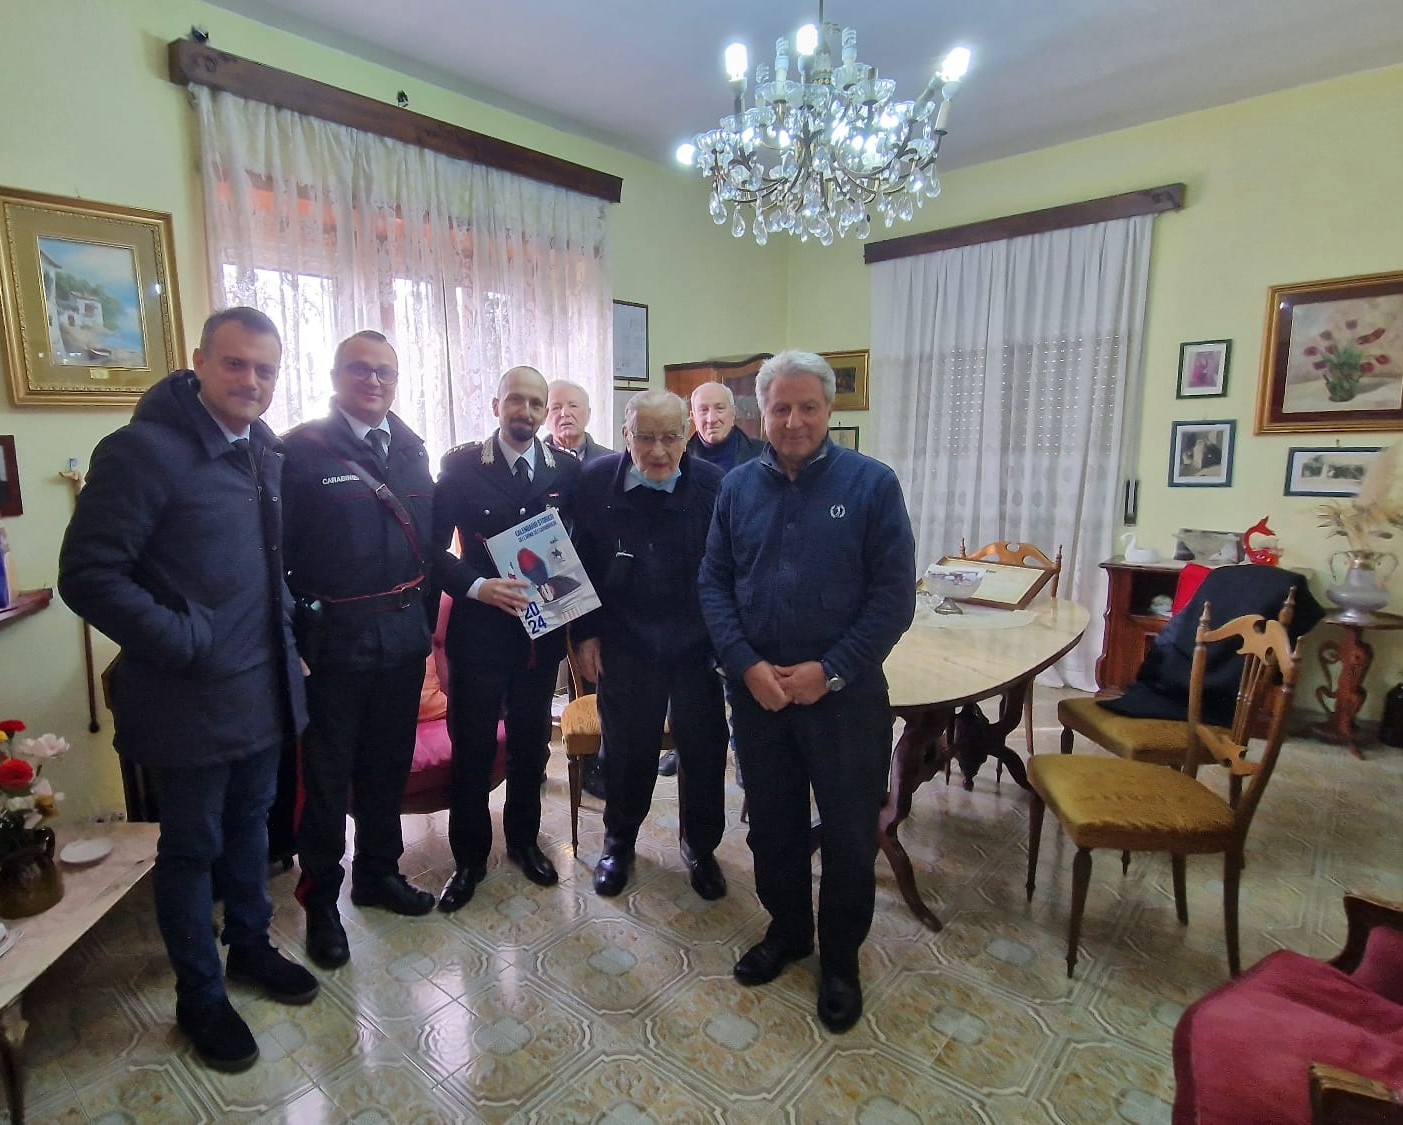 Montemiletto| I carabinieri donano il calendario storico al quasi centenario membro dell’ANC Sordillo